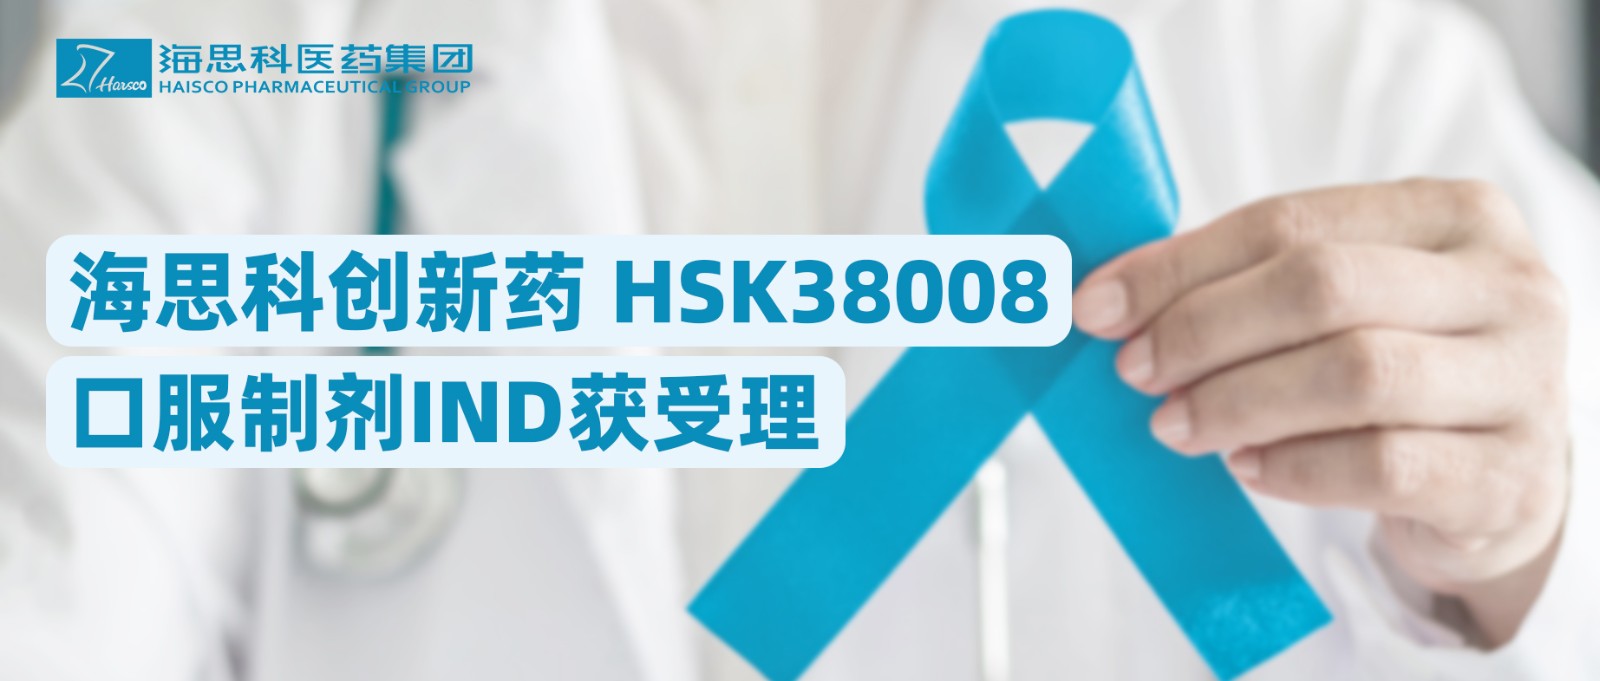 海思科创新药HSK38008口服制剂IND获受理